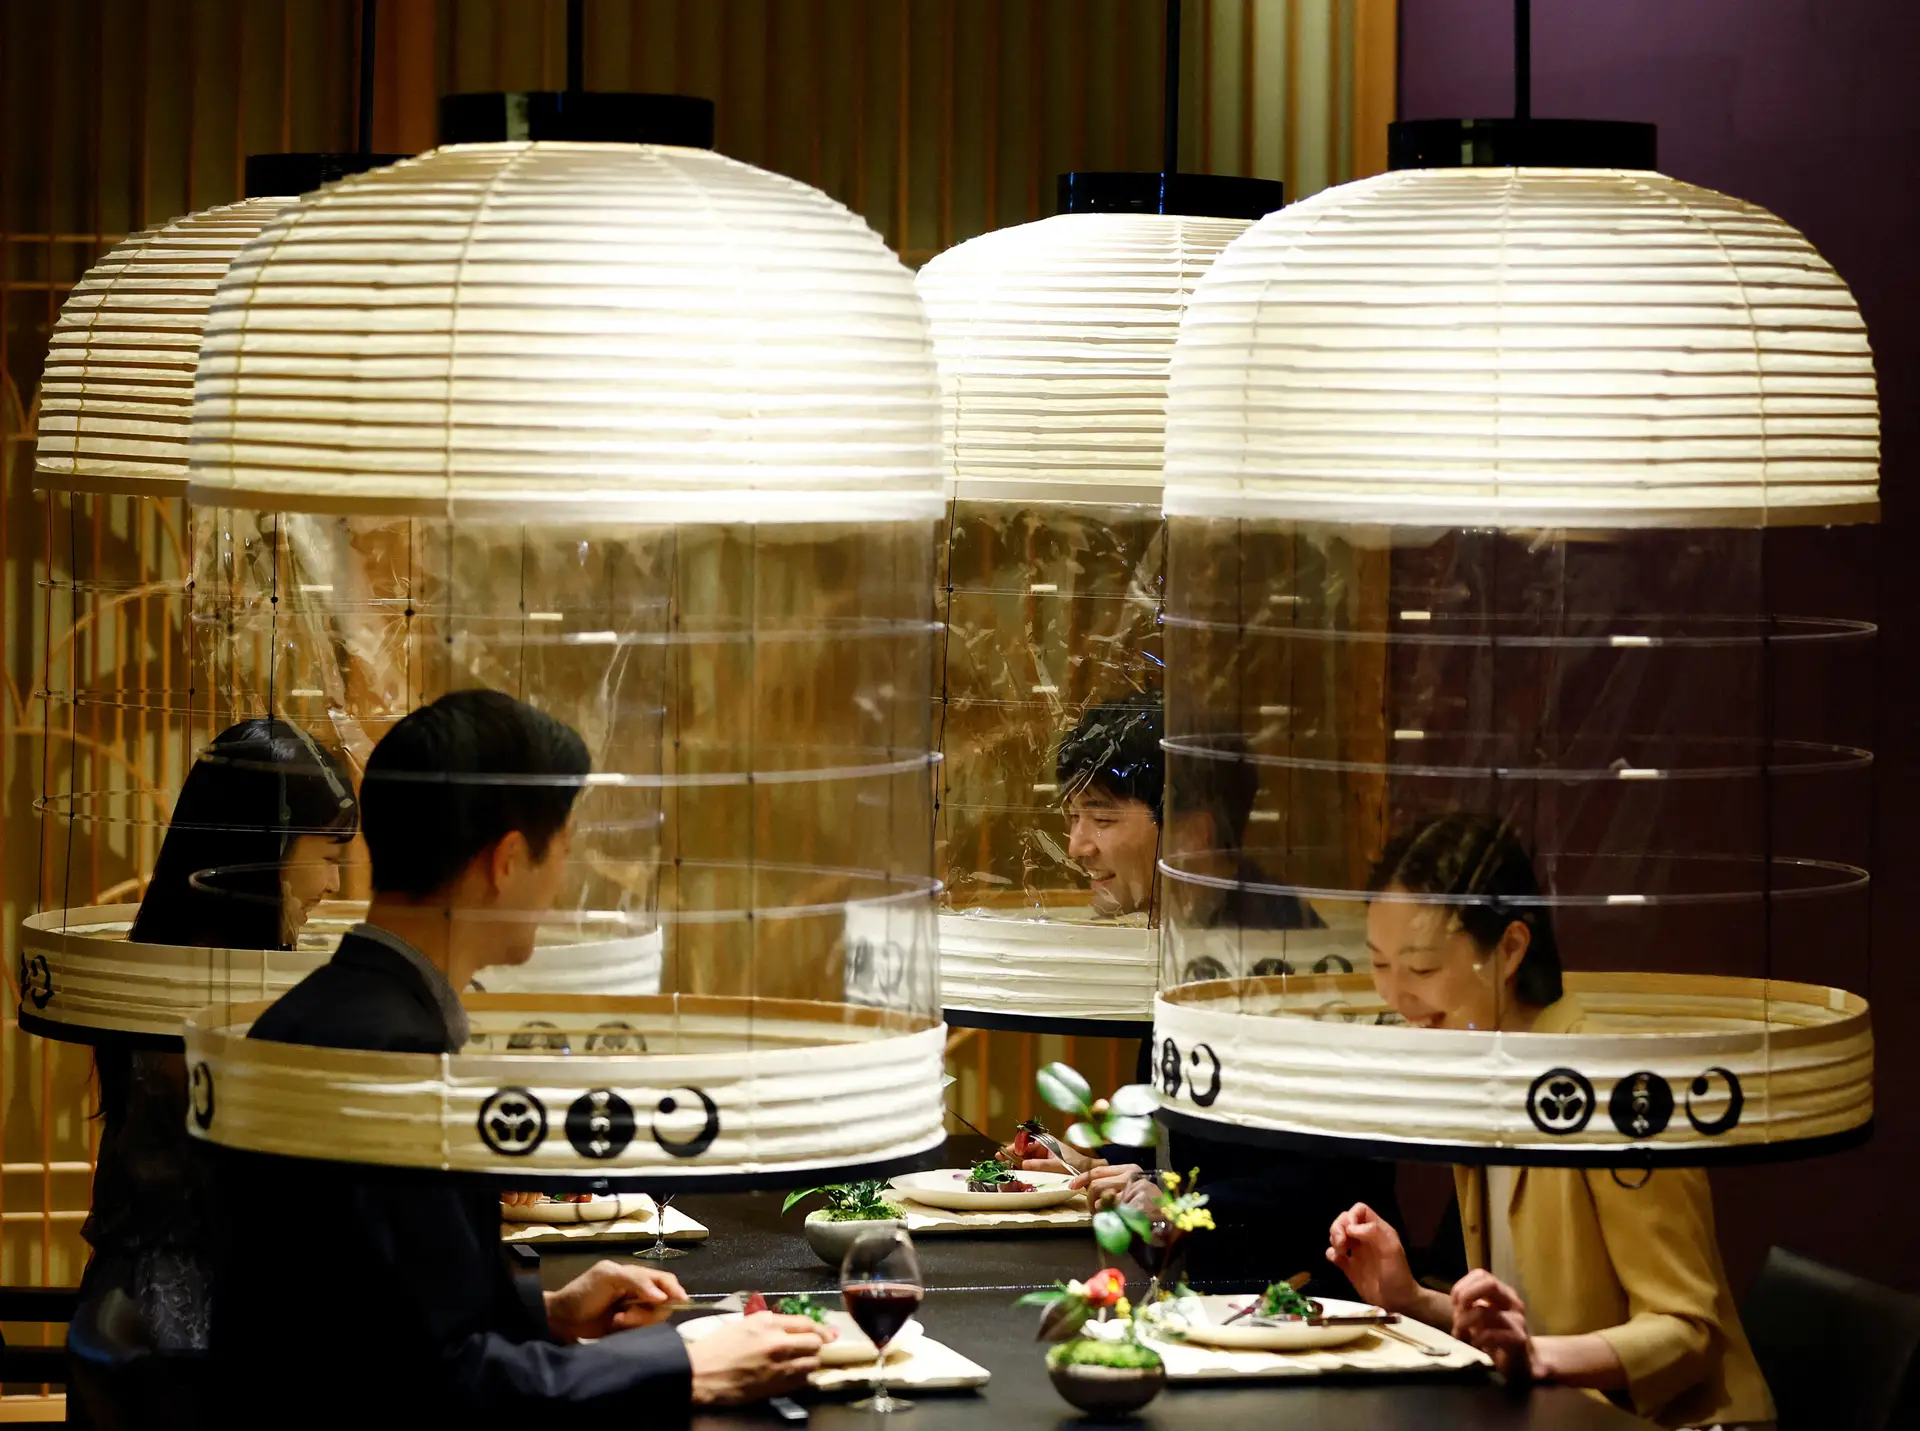 PROTEÇÃO. Neste hotel de Tóquio, é possível jantar dentro de cápsulas que resguardam os convivas dos perigos da covid-19